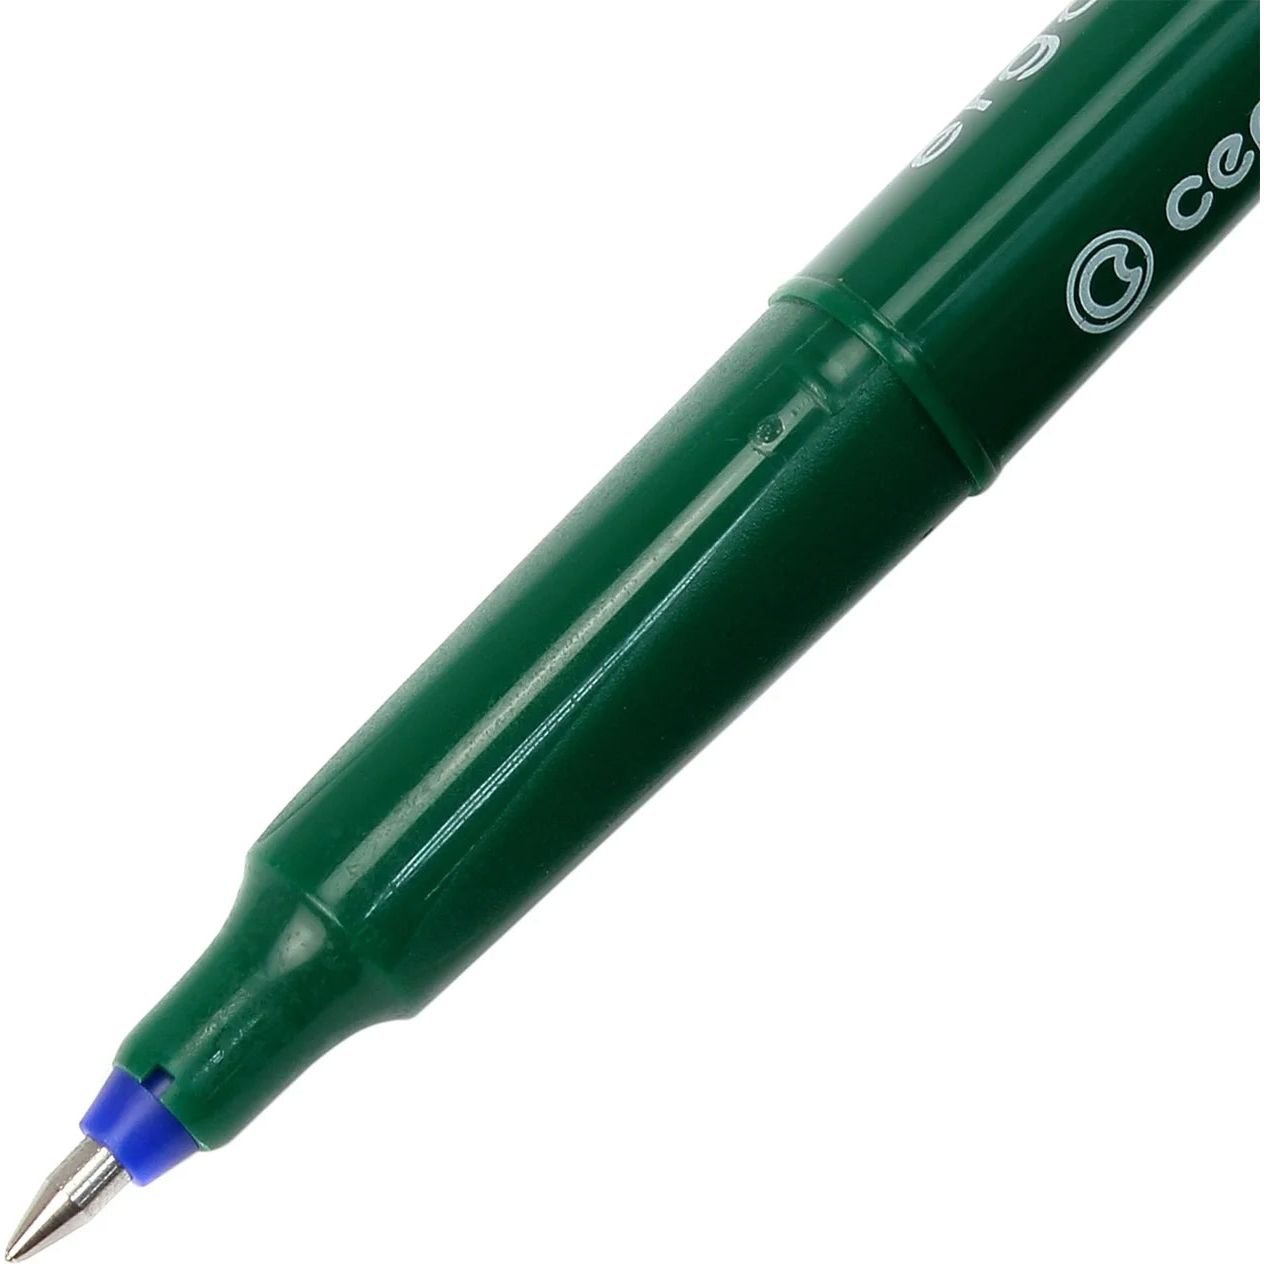 Роллер Centropen 4615 F ergoline 0.3 мм синее чернило зеленый (4615/03) - фото 2